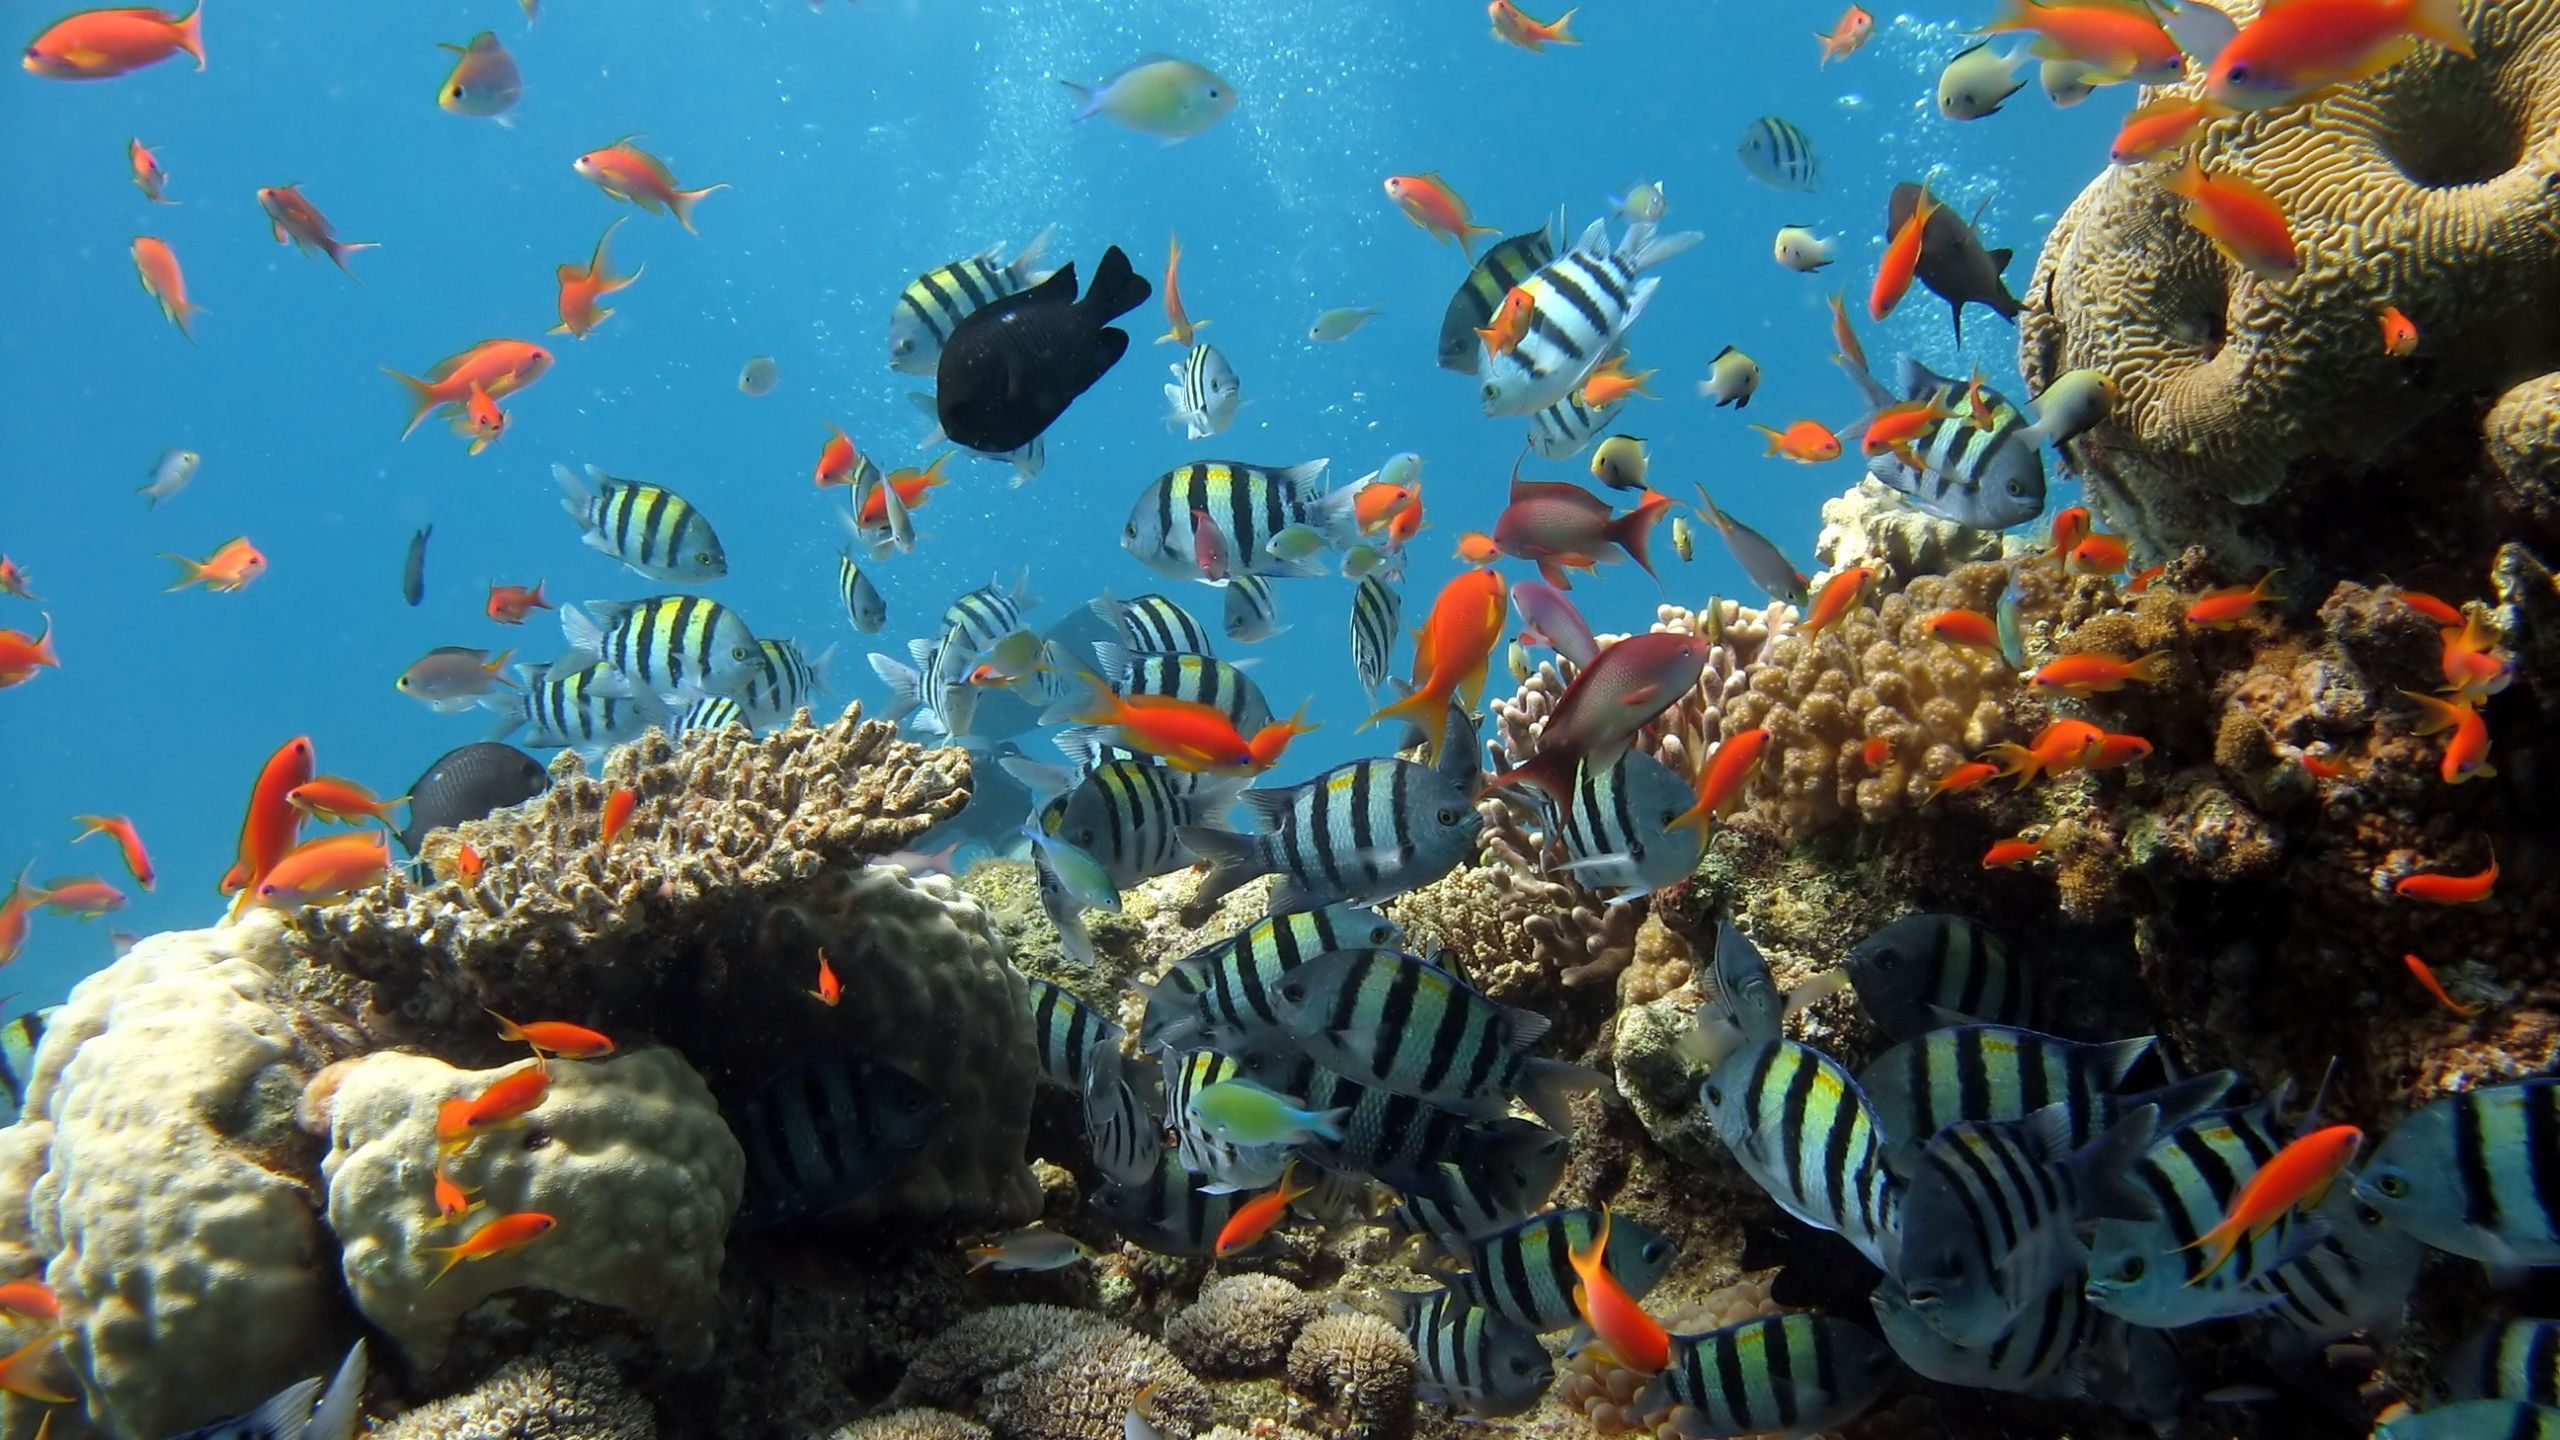  Aquarium Hintergrundbild 2560x1440. Kostenlose Hintergrundbilder Fischschwarm im Aquarium, Bilder Für Ihren Desktop Und Fotos